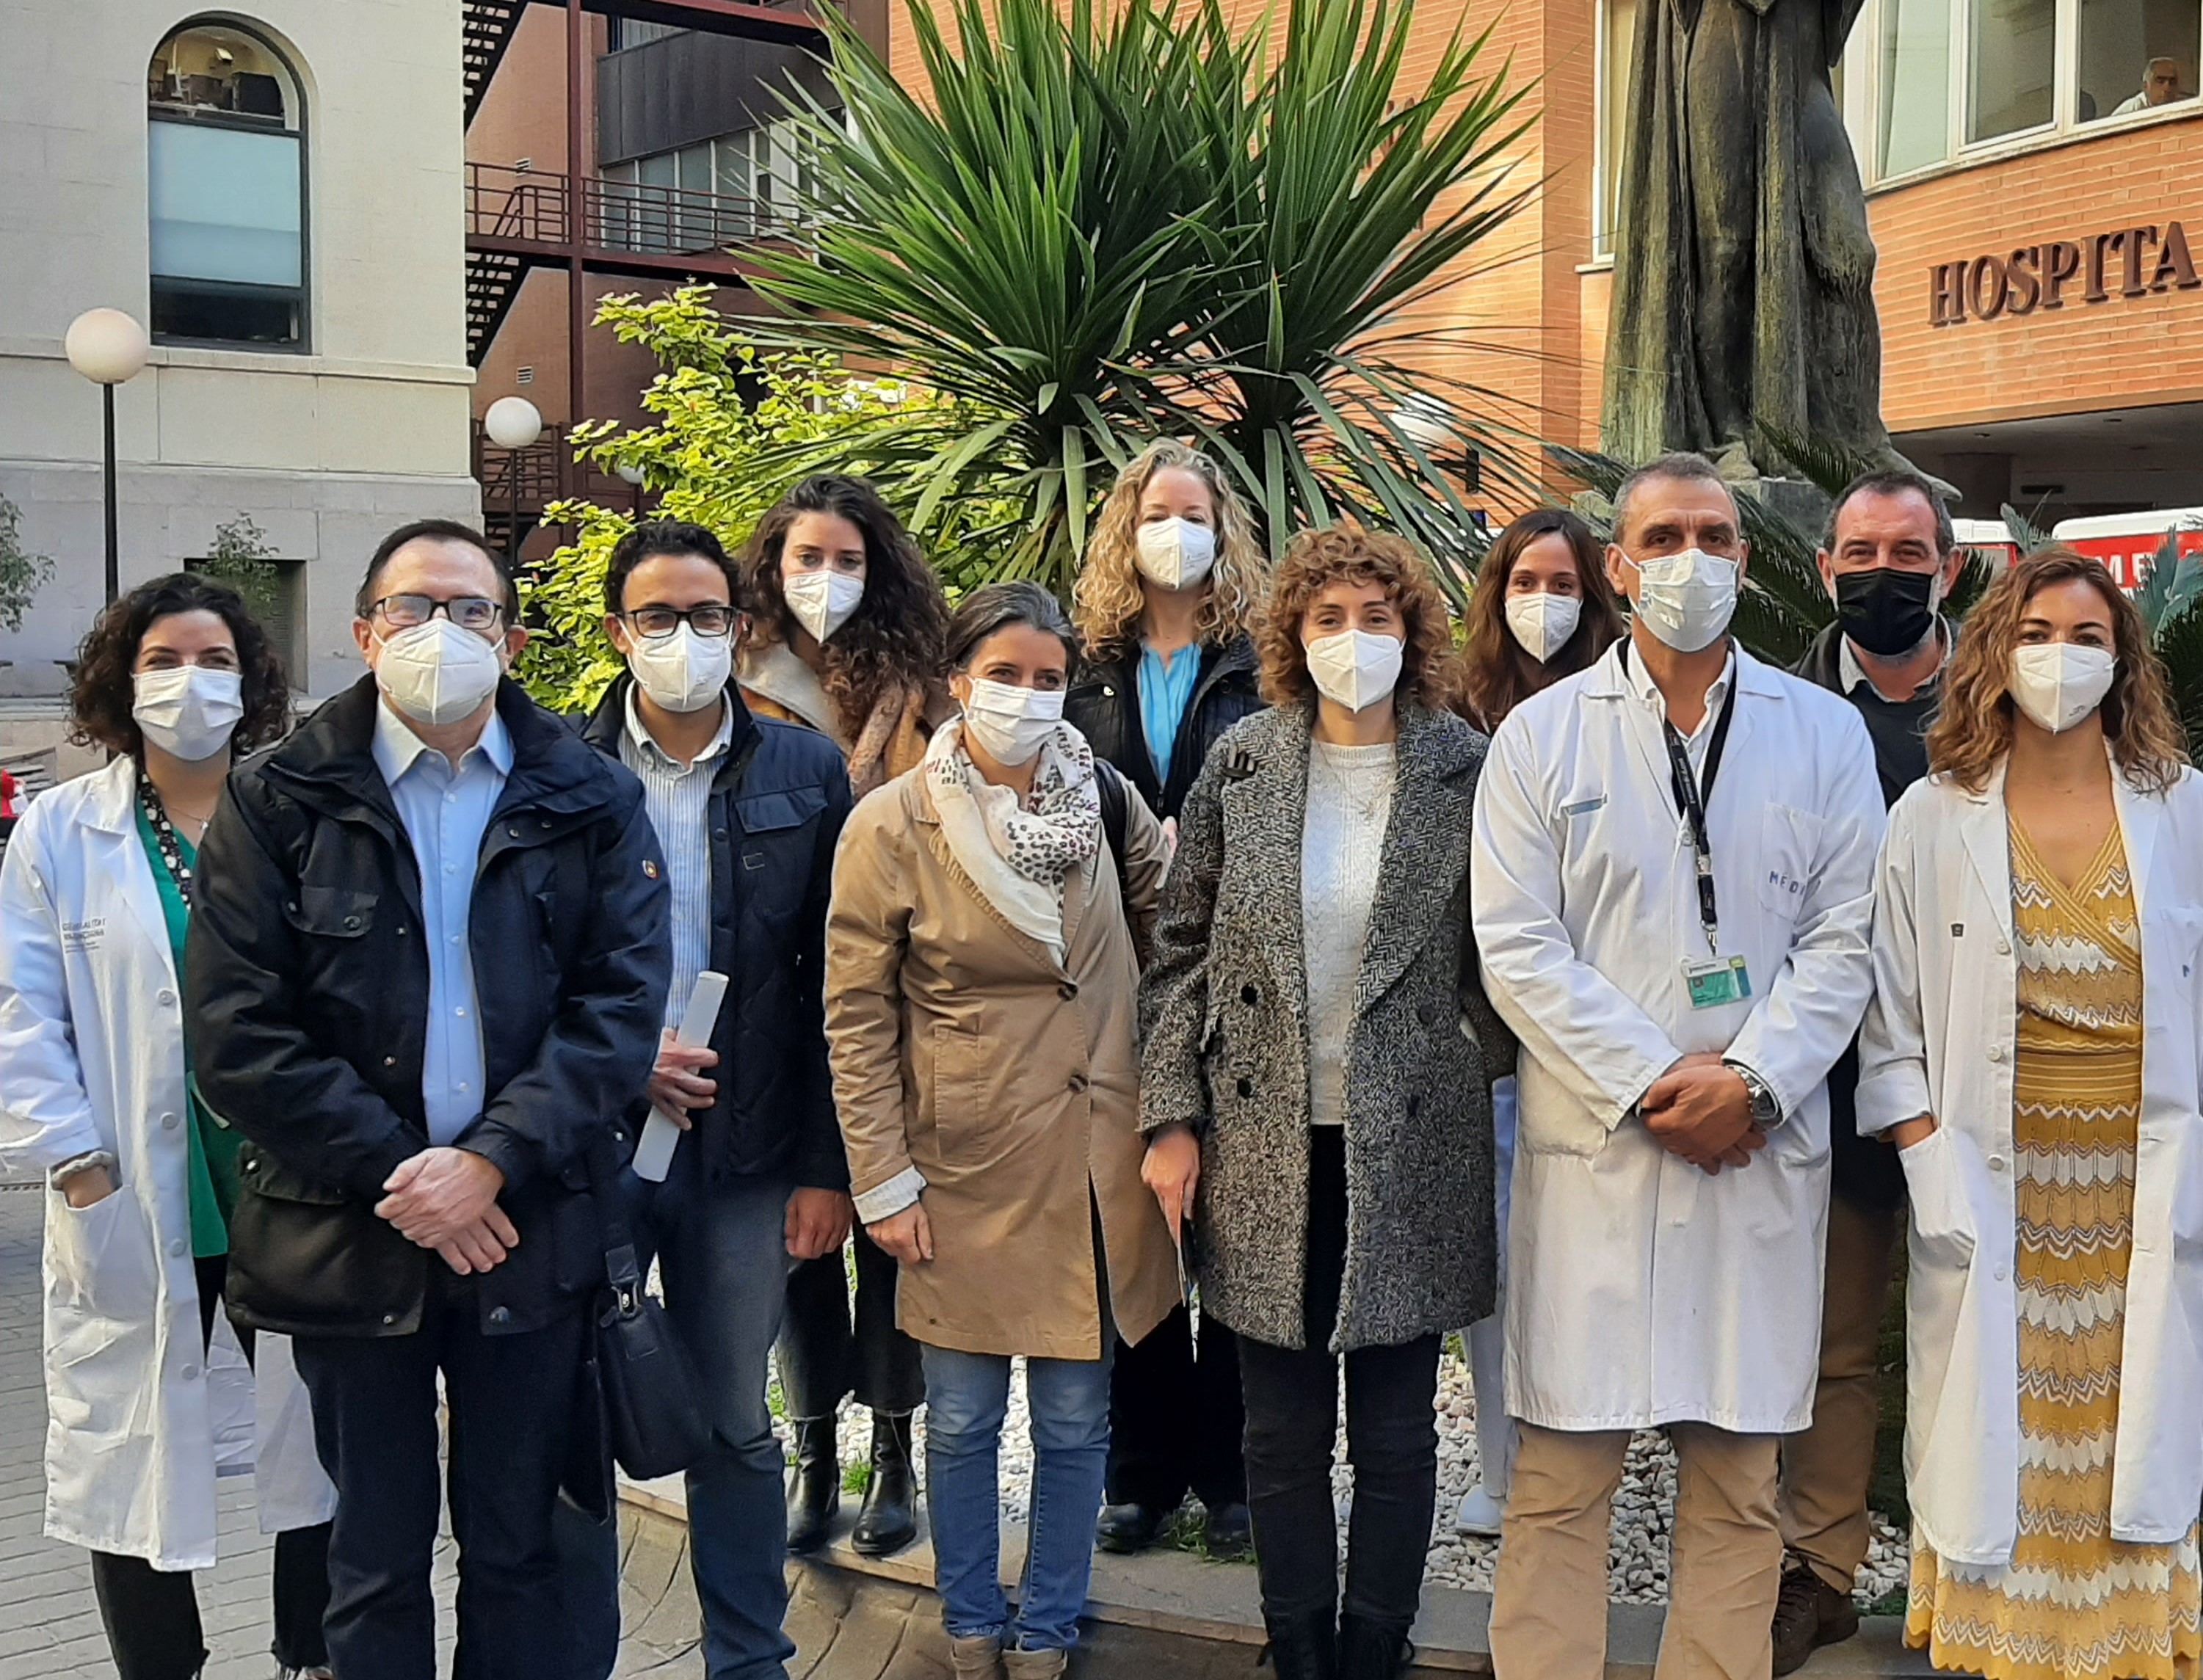 La Unitat d'endometriosi de l'Hospital Clínic de València atén més de 2.000 consultes a l'any